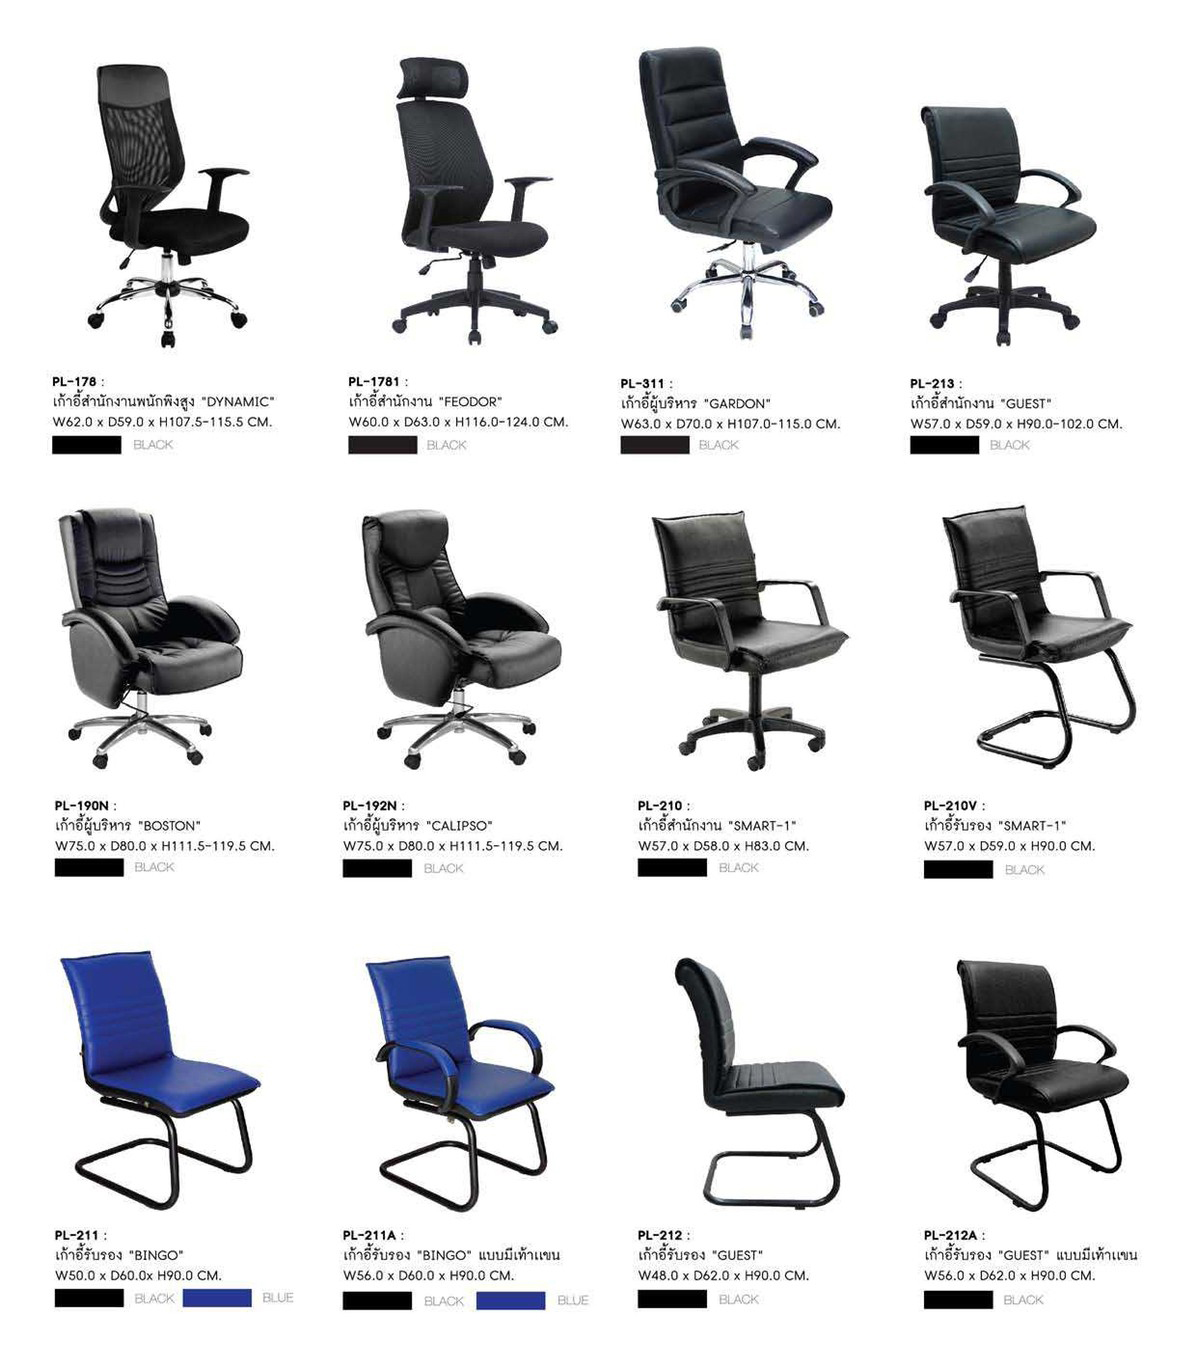 71060::PL-178::เก้าอี้สำนักงาน DYNAMIC พนักพิงสูง สีดำ ขนาด 620x590x1060x1140 มม. เก้าอี้สำนักงาน SURE